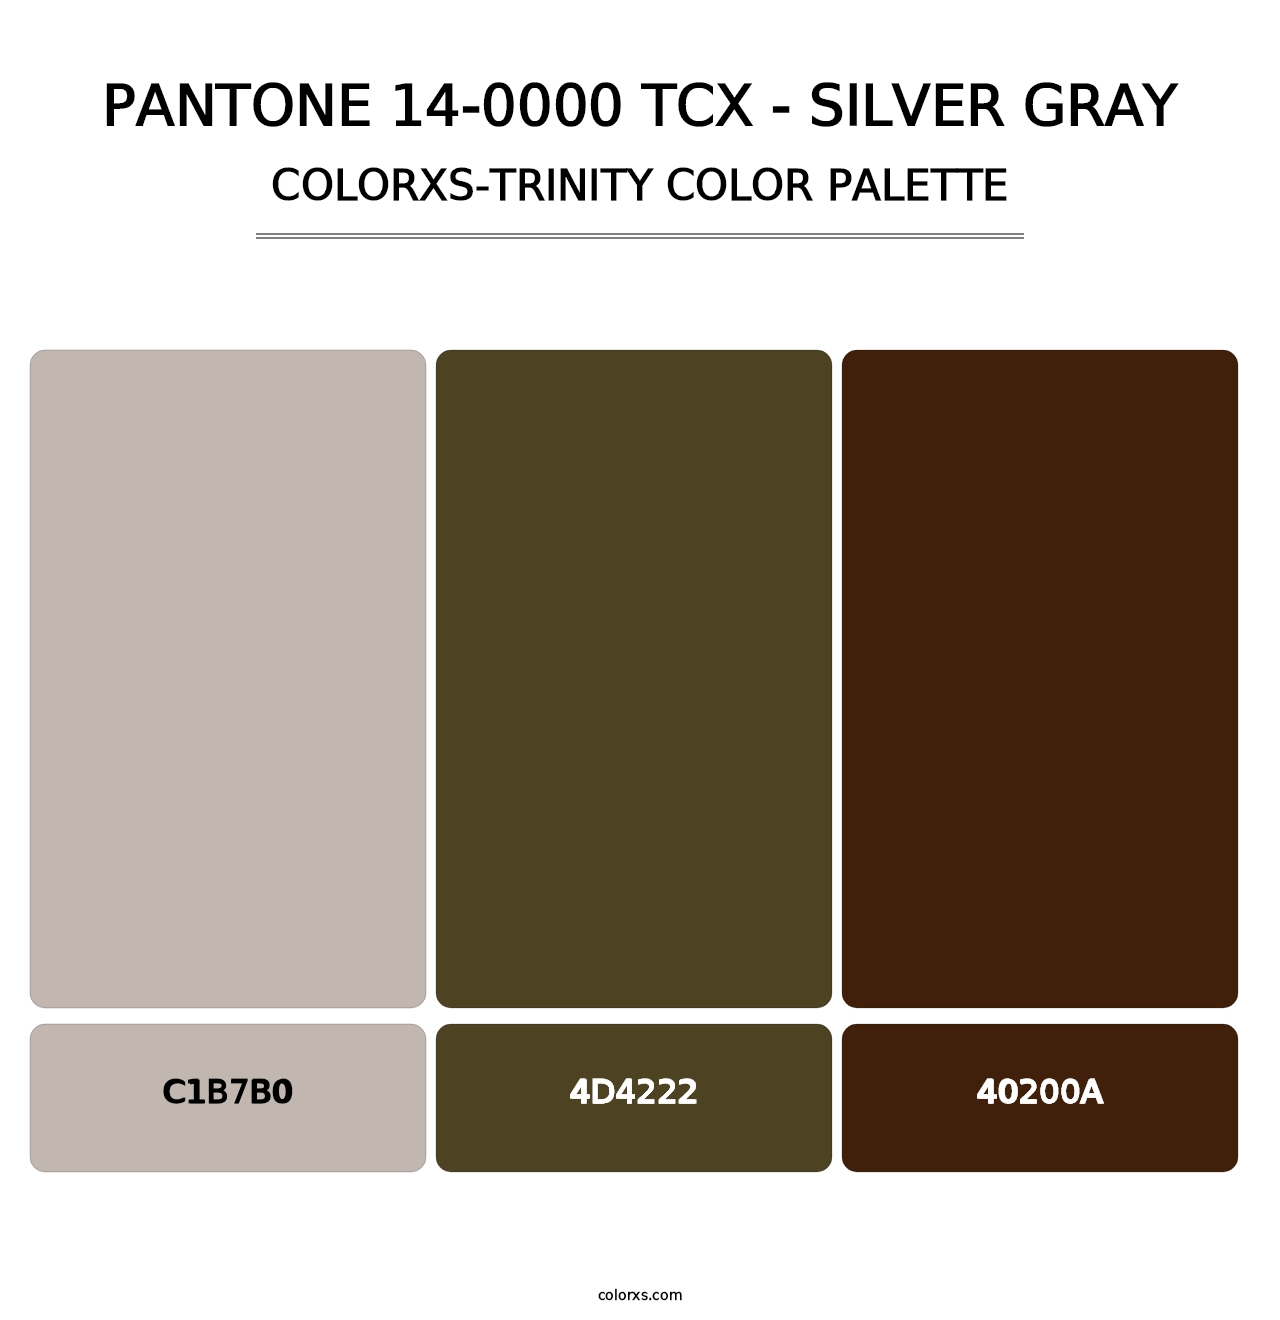 PANTONE 14-0000 TCX - Silver Gray - Colorxs Trinity Palette